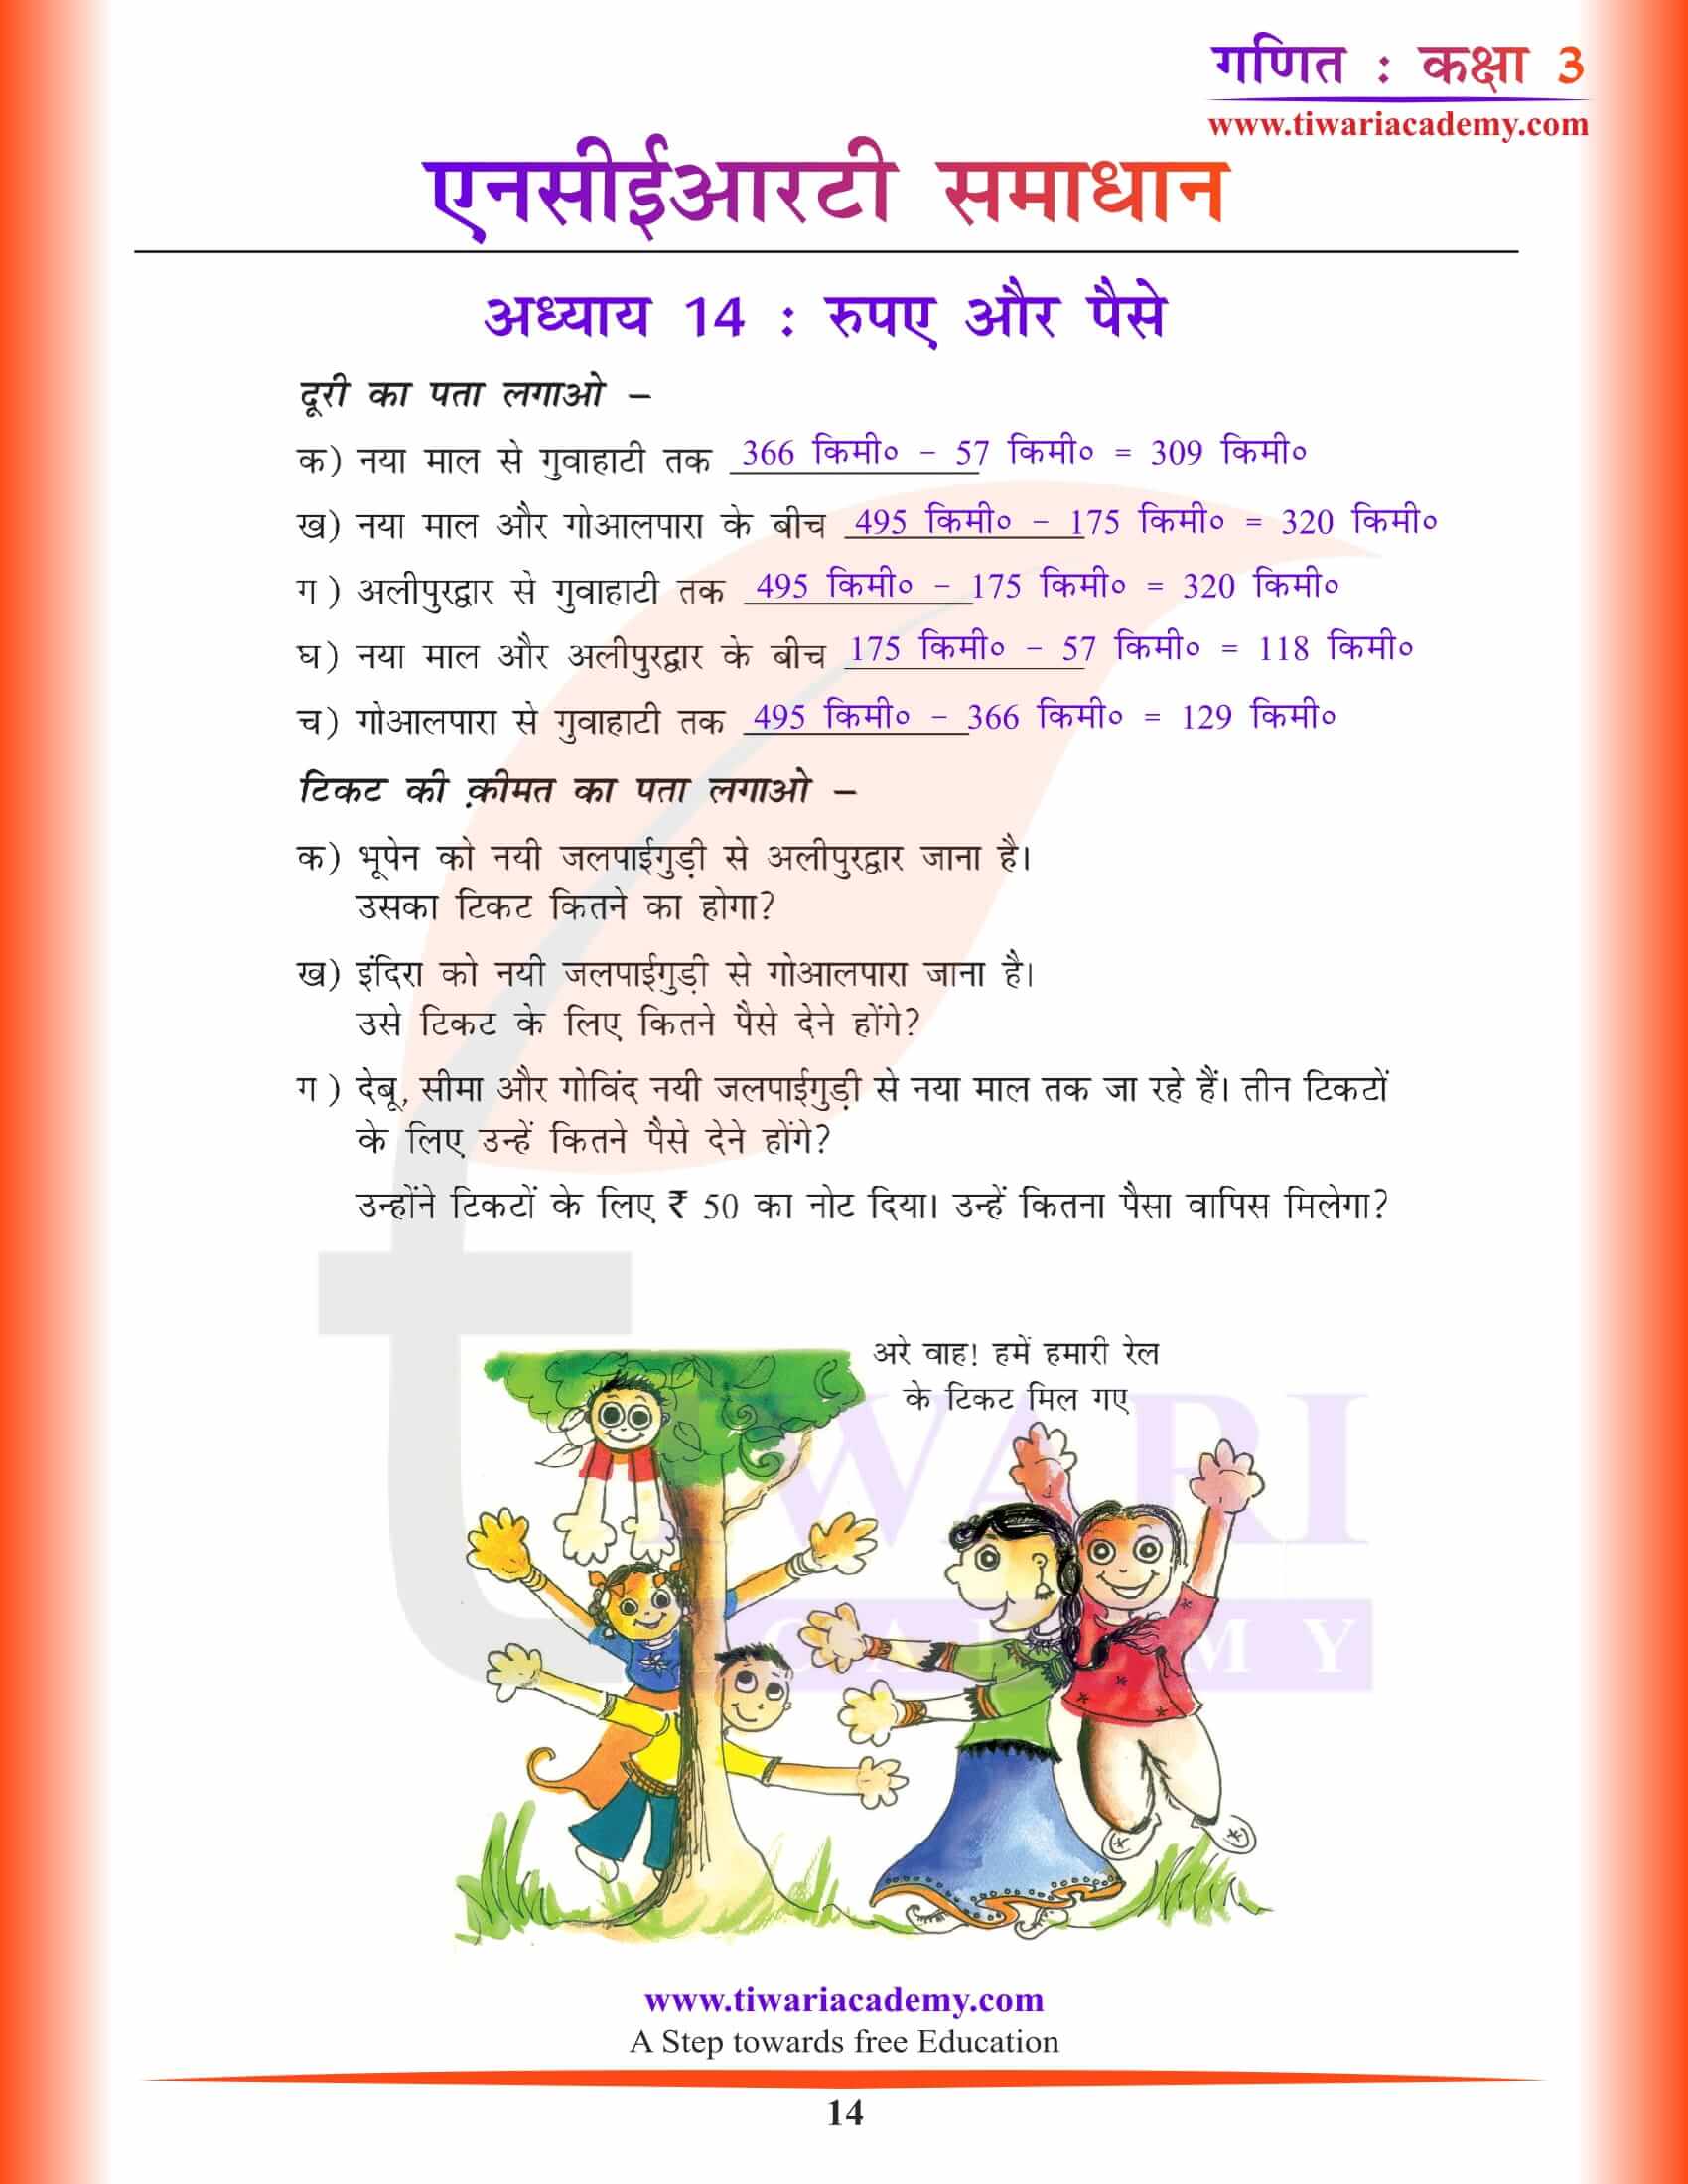 कक्षा 3 गणित अध्याय 14 हिंदी में प्रश्नों के हल